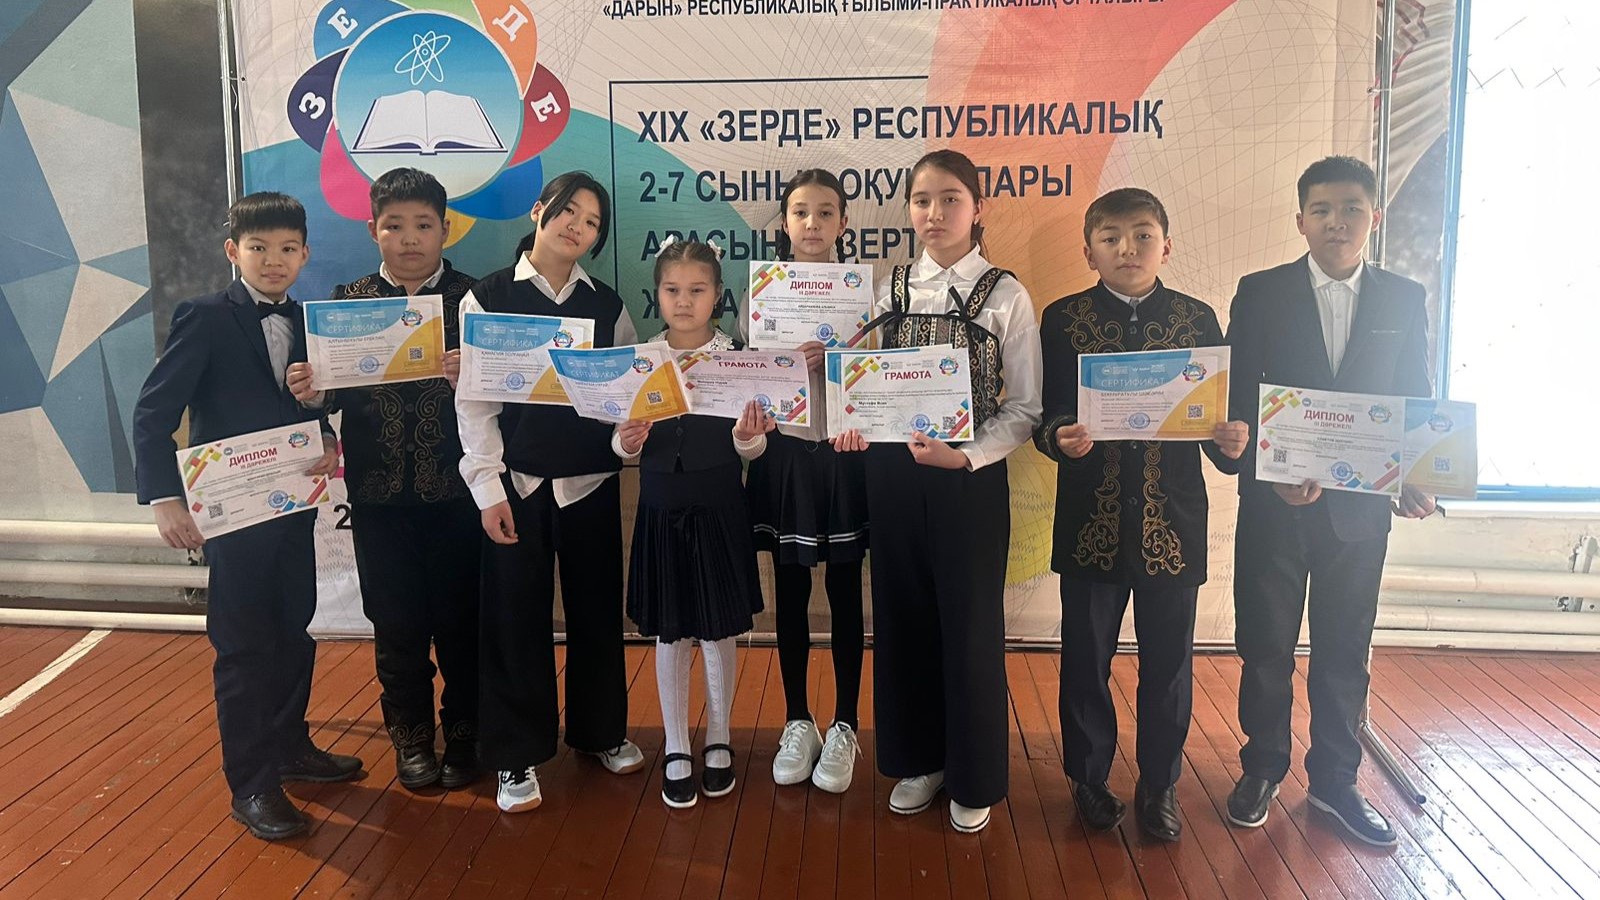 Акмолинские школьники в тройке призеров XIХ республиканского конкурса исследовательских работ «Зерде»